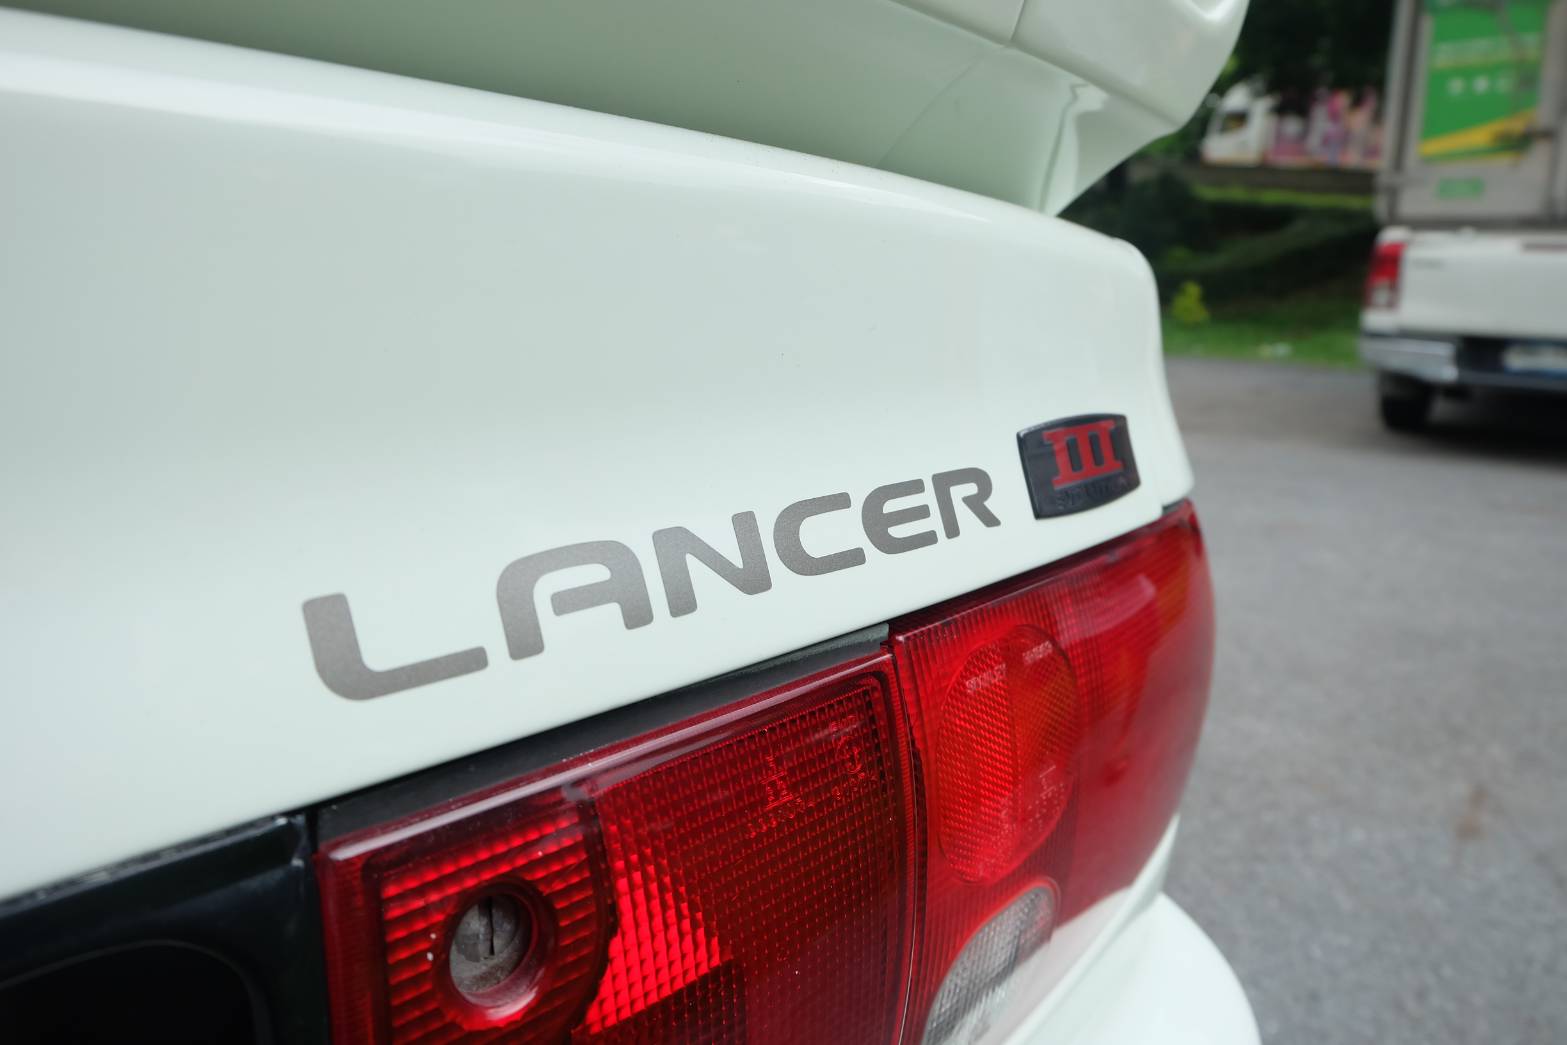 1993 Mitsubishi Lancer E-CAR สีขาว